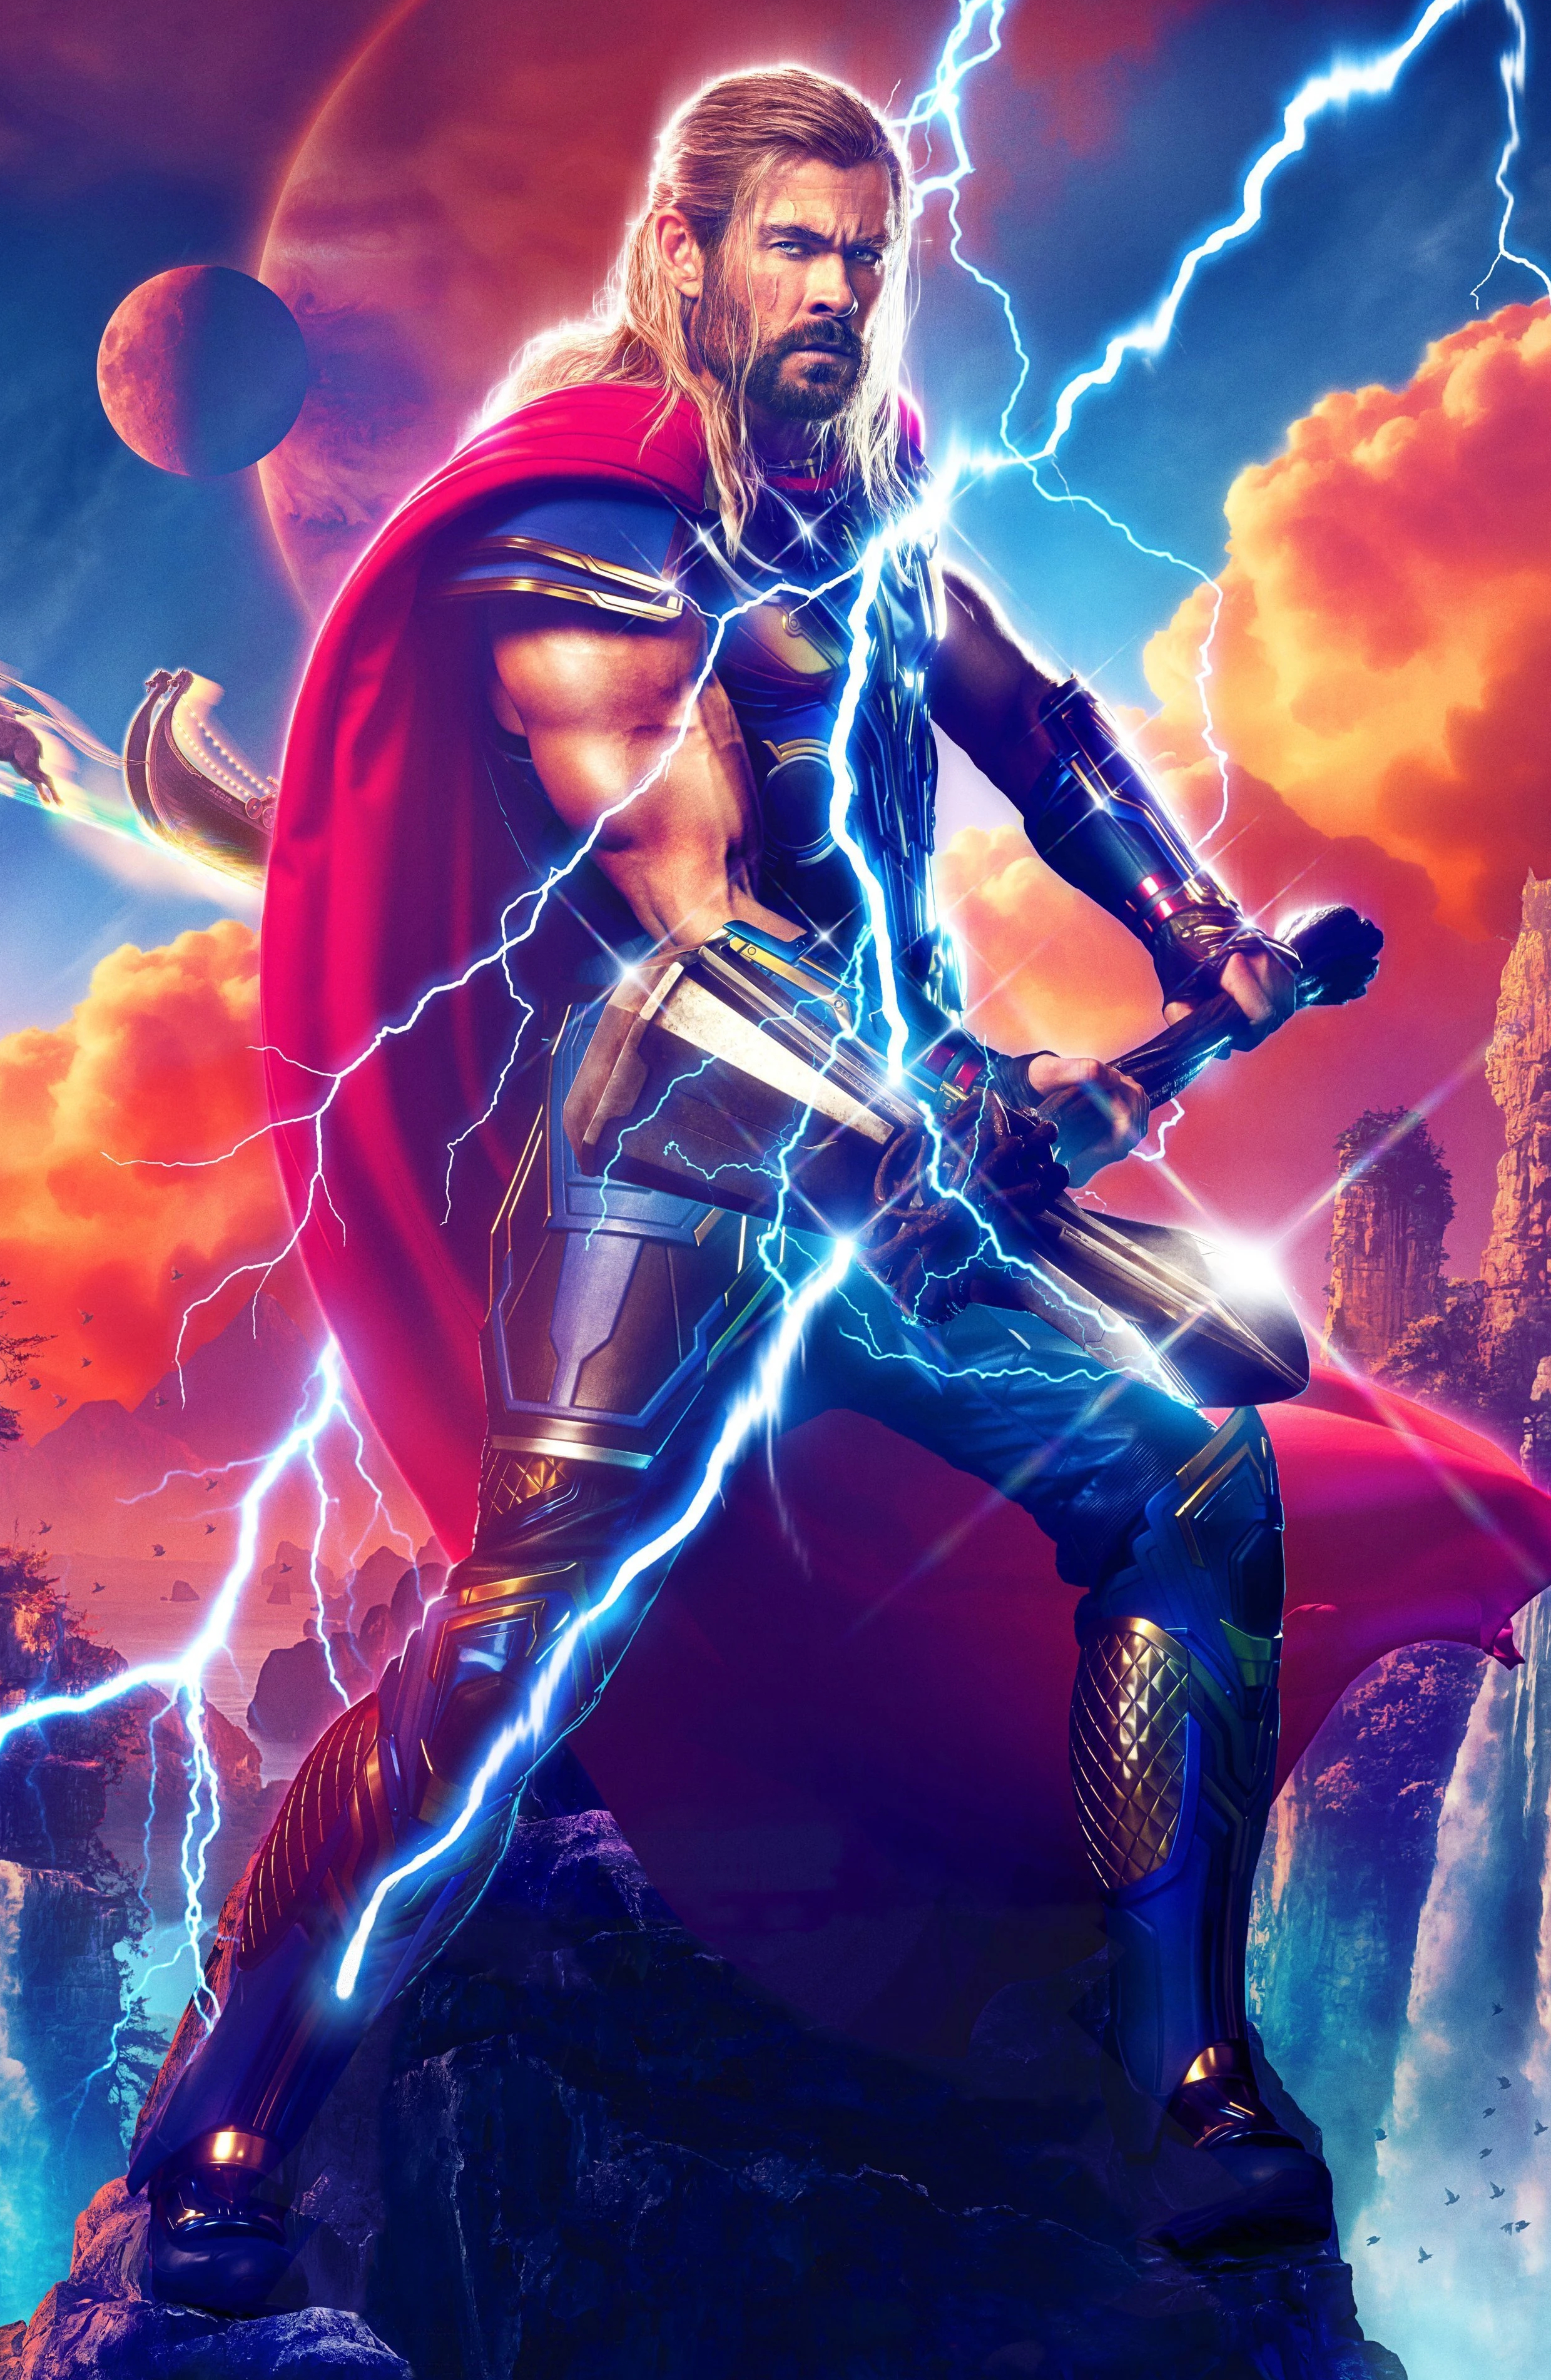 Thor Deluxe Love amp Thunder Costume Adult Marvel Avenger Top Pants Cape  Licensed  eBay